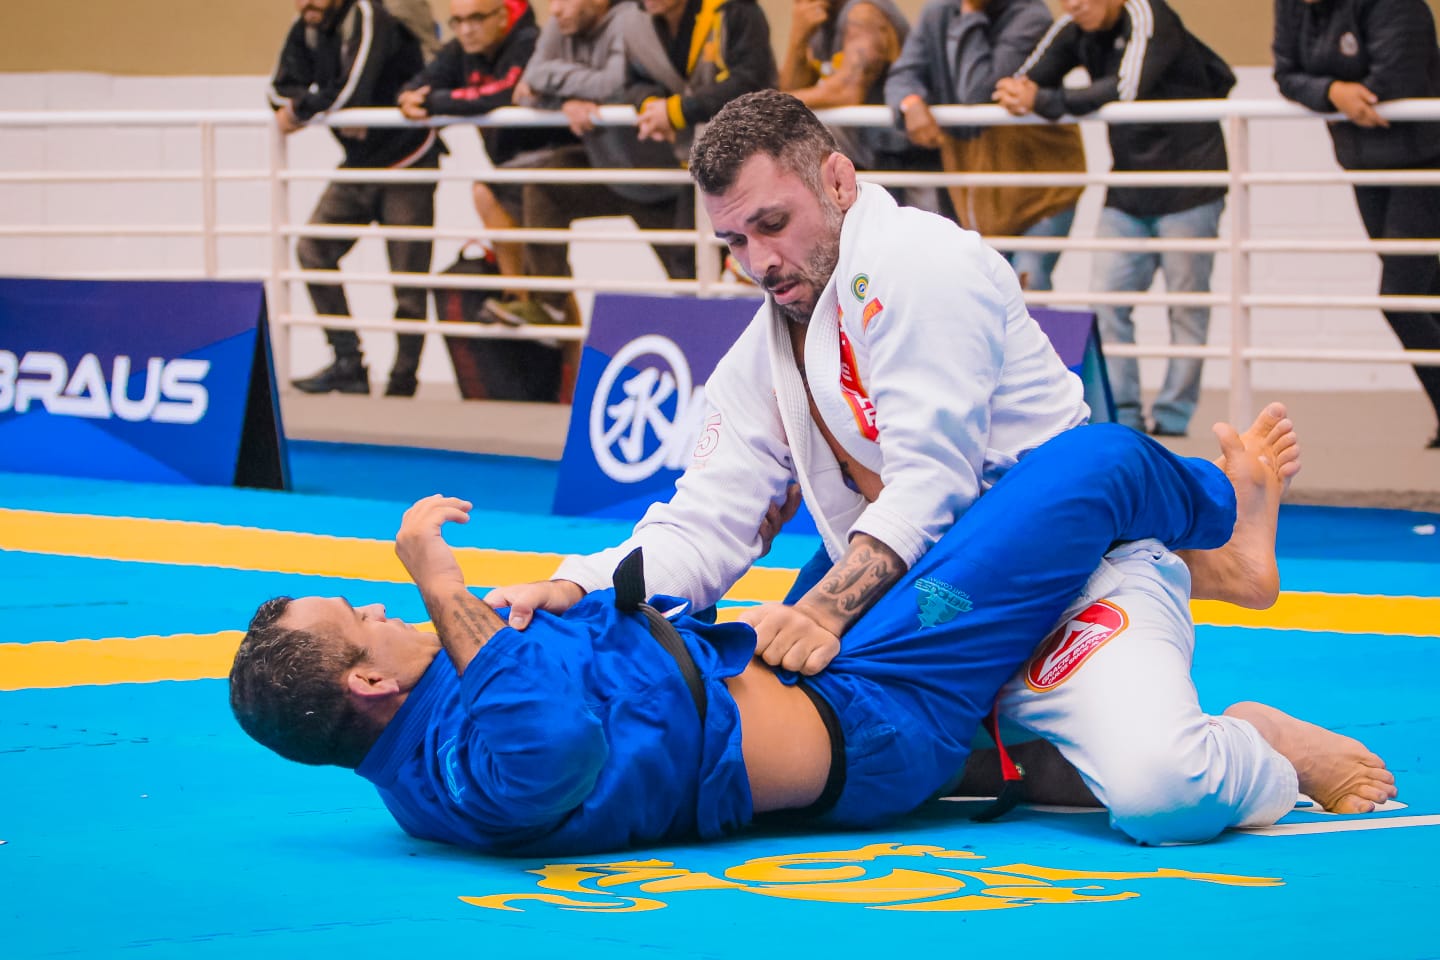 Mundial de Jiu-Jitsu 2018: O dia seguinte de um campeão na faixa-preta